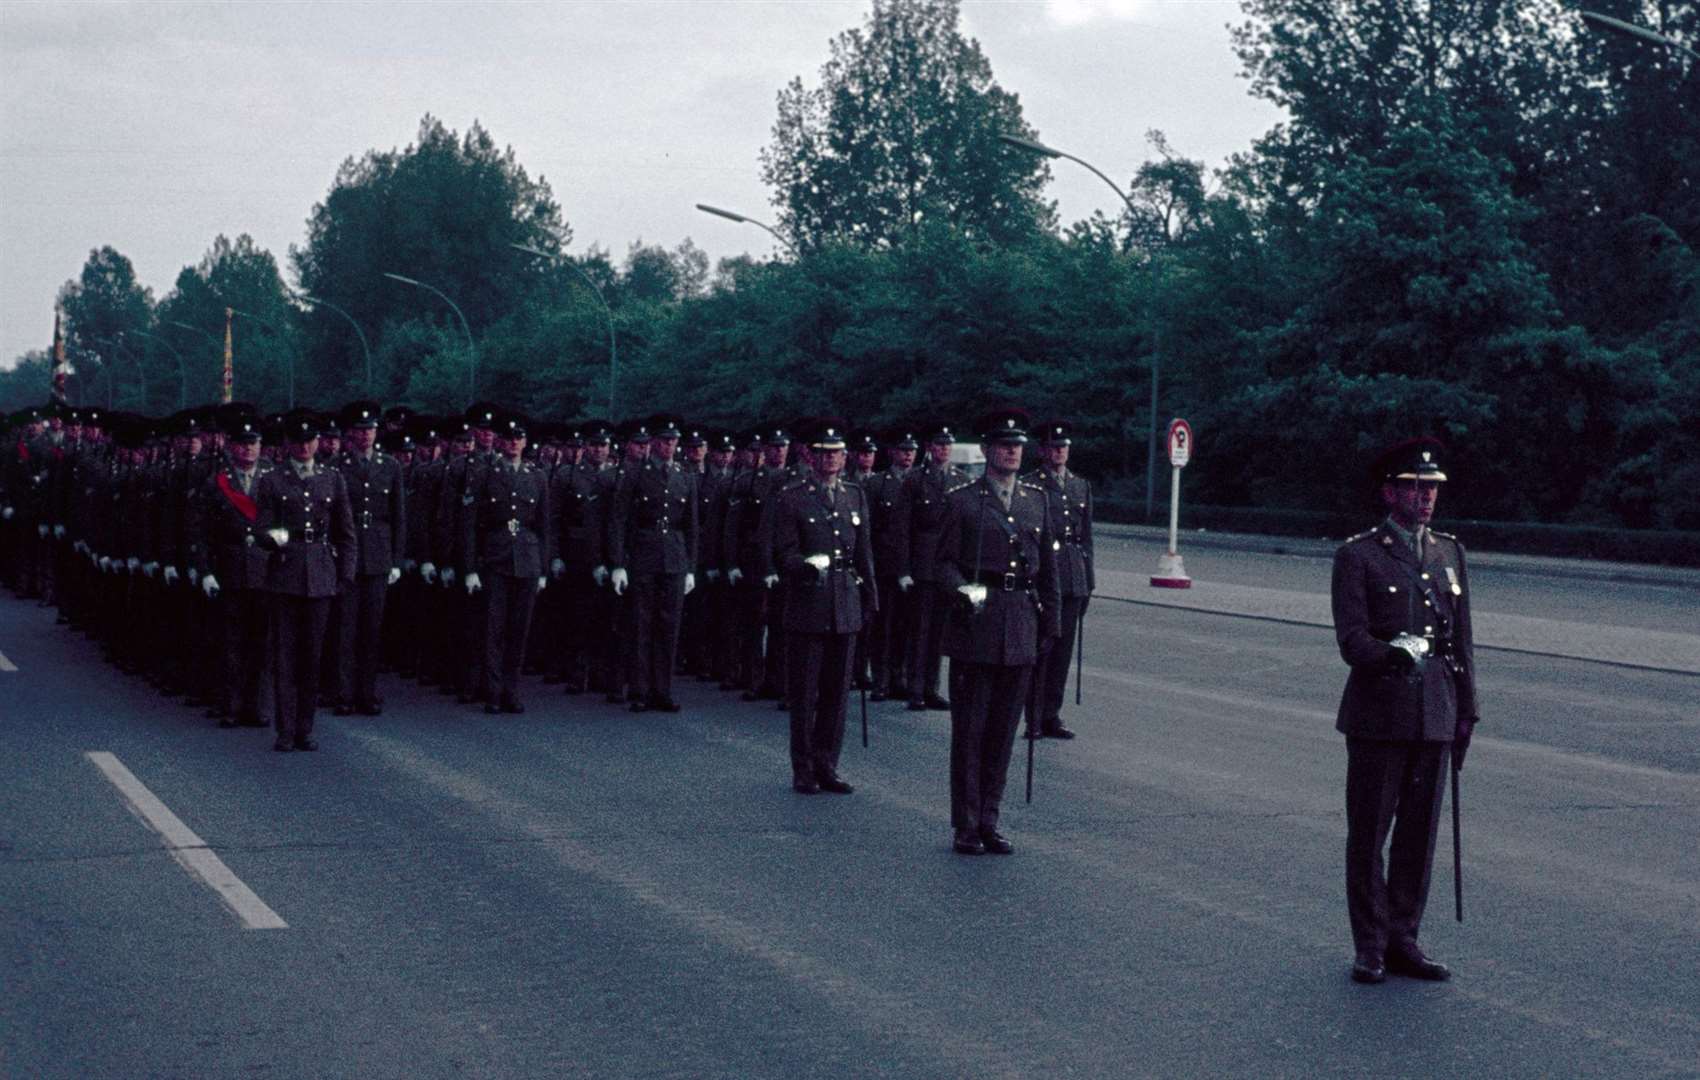 Allied parade in Tiergarten, West Berlin, 1965. Image from iStock and Atlantic-Kid